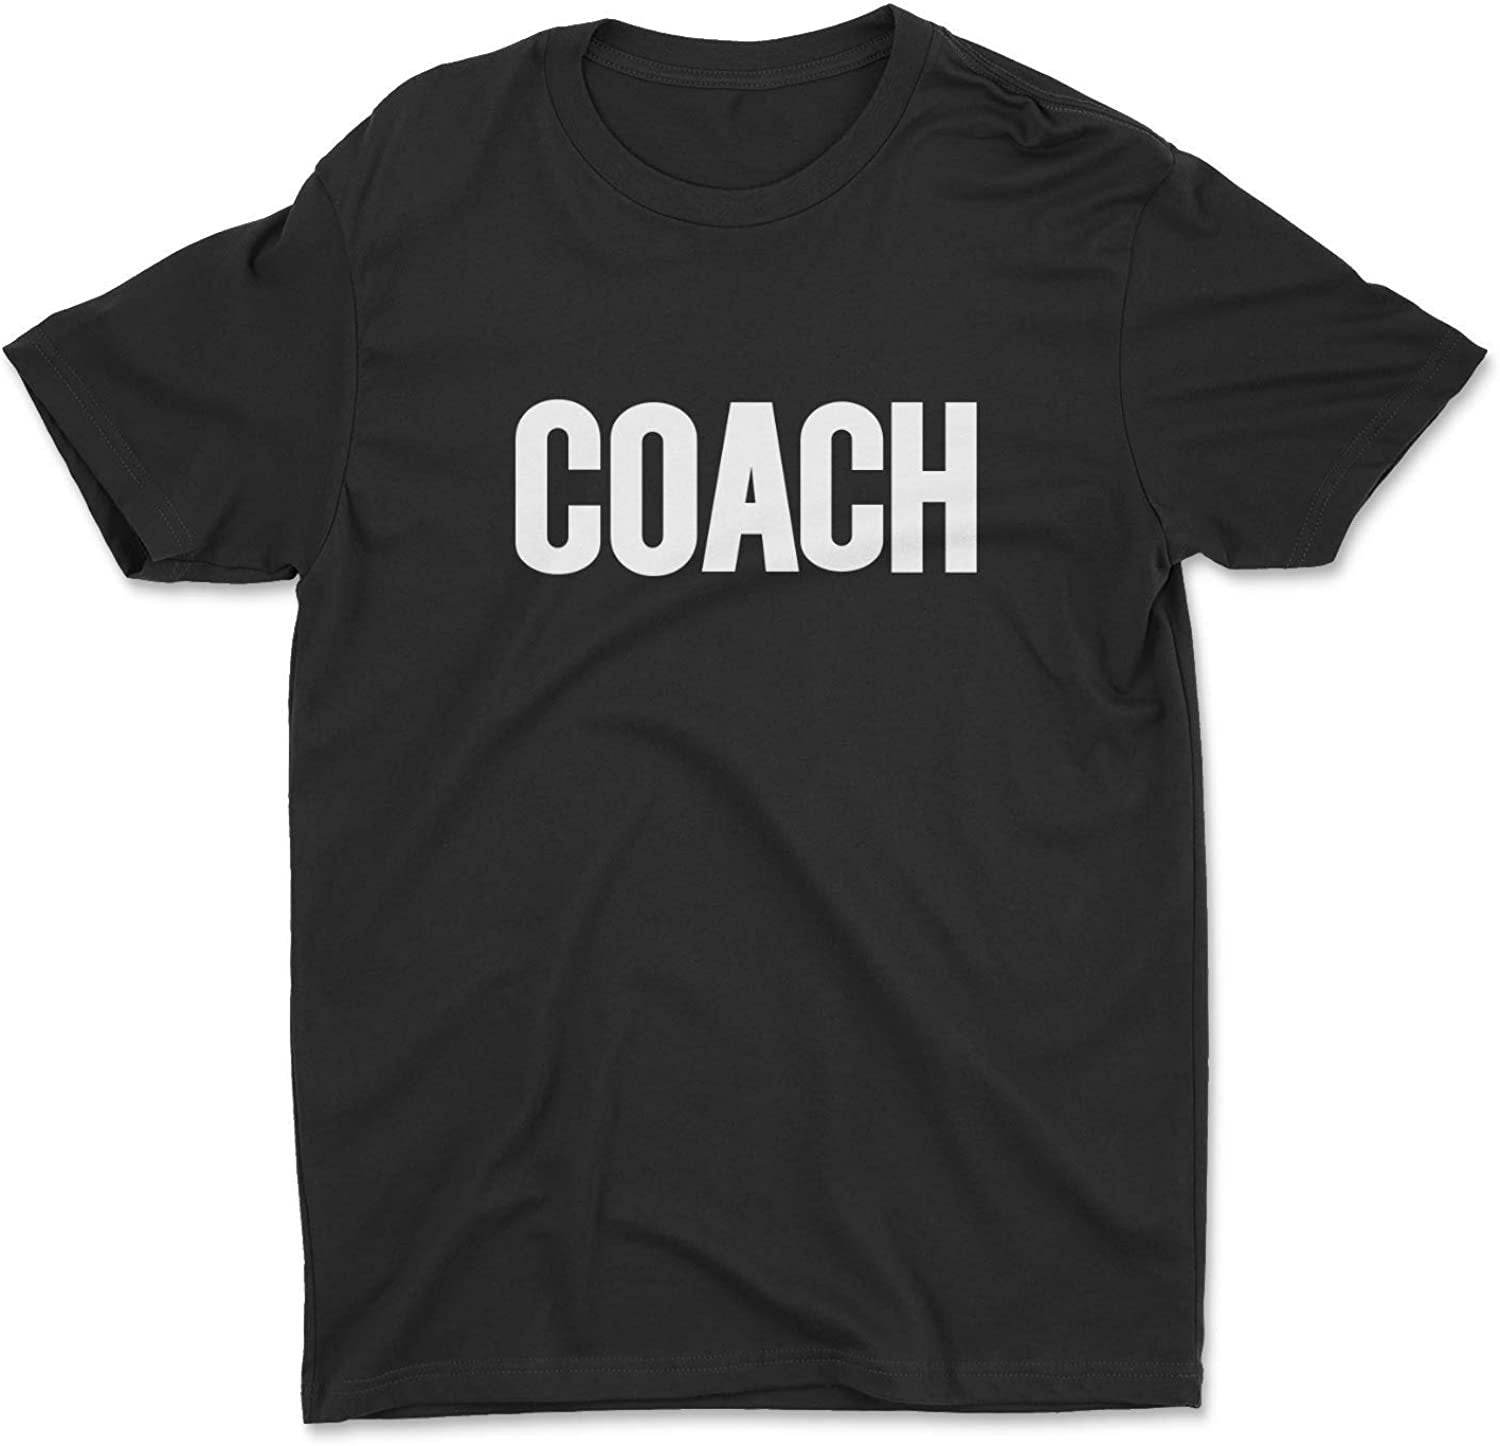 T-shirt Coach pour hommes (conception solide, noir et blanc)